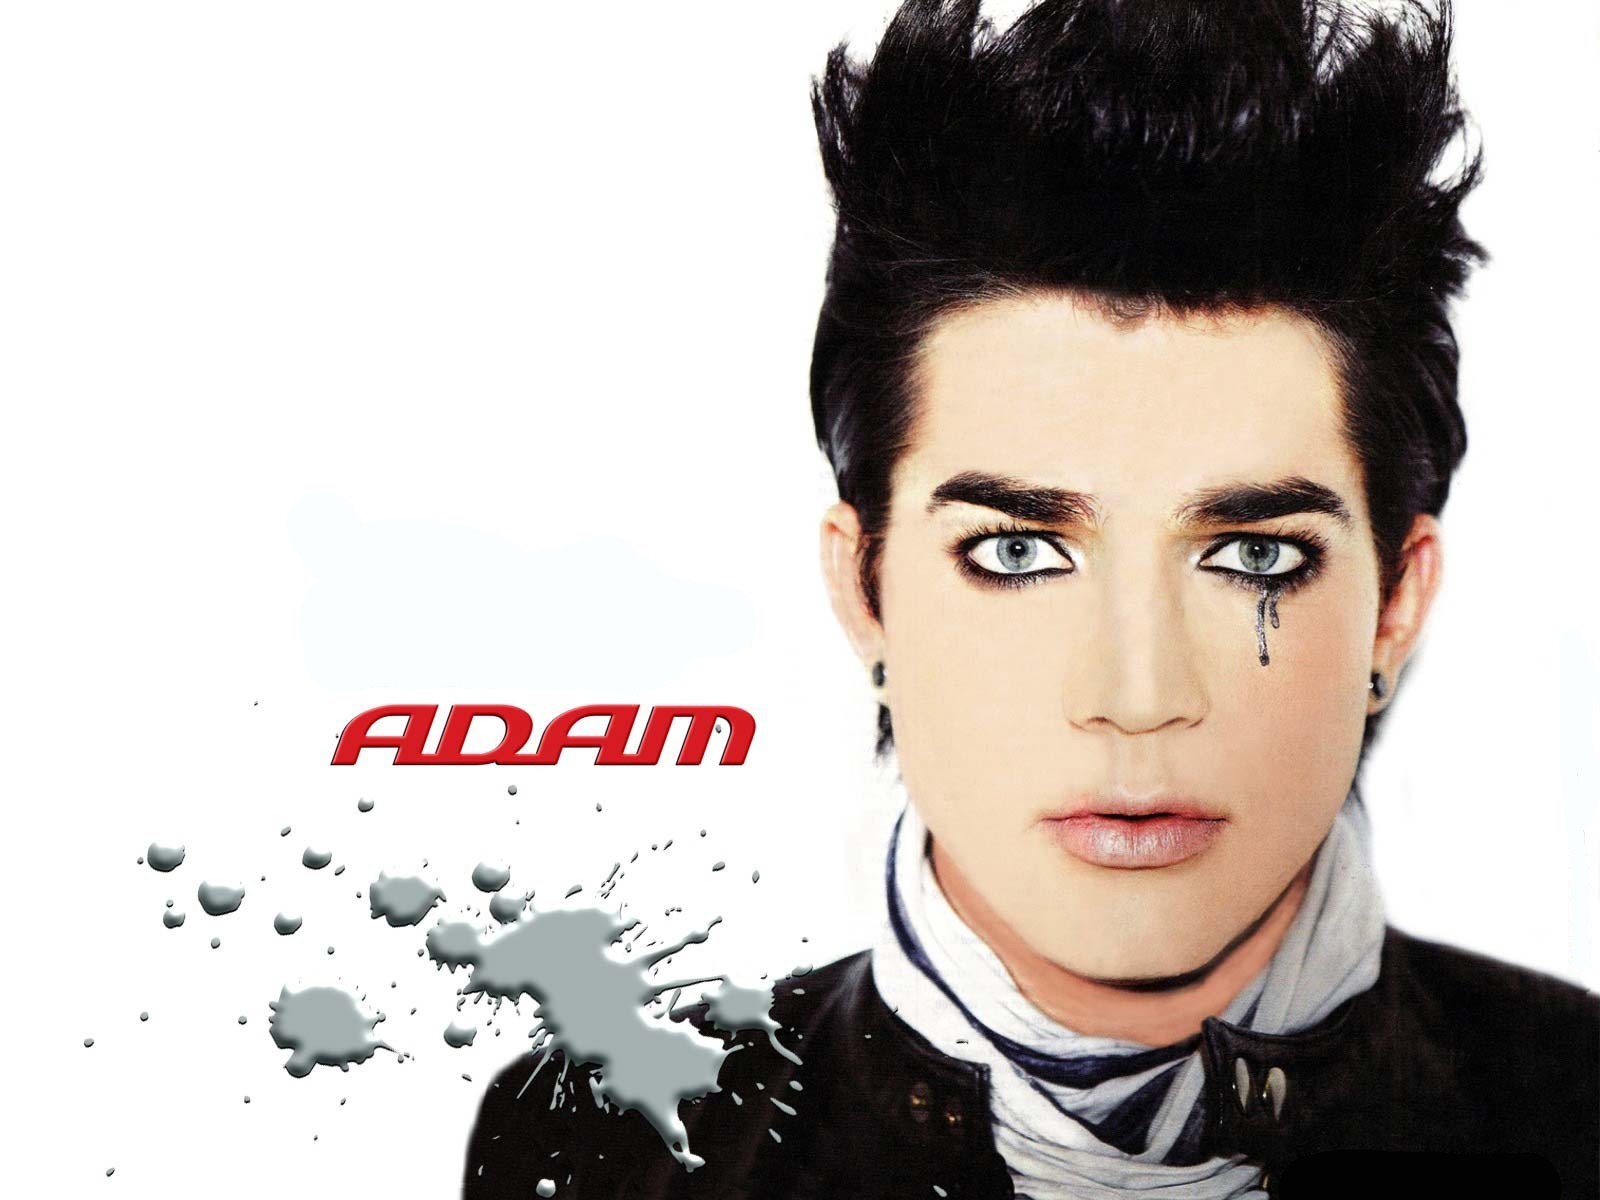 adam wallpaper,capelli,viso,fronte,sopracciglio,copertina